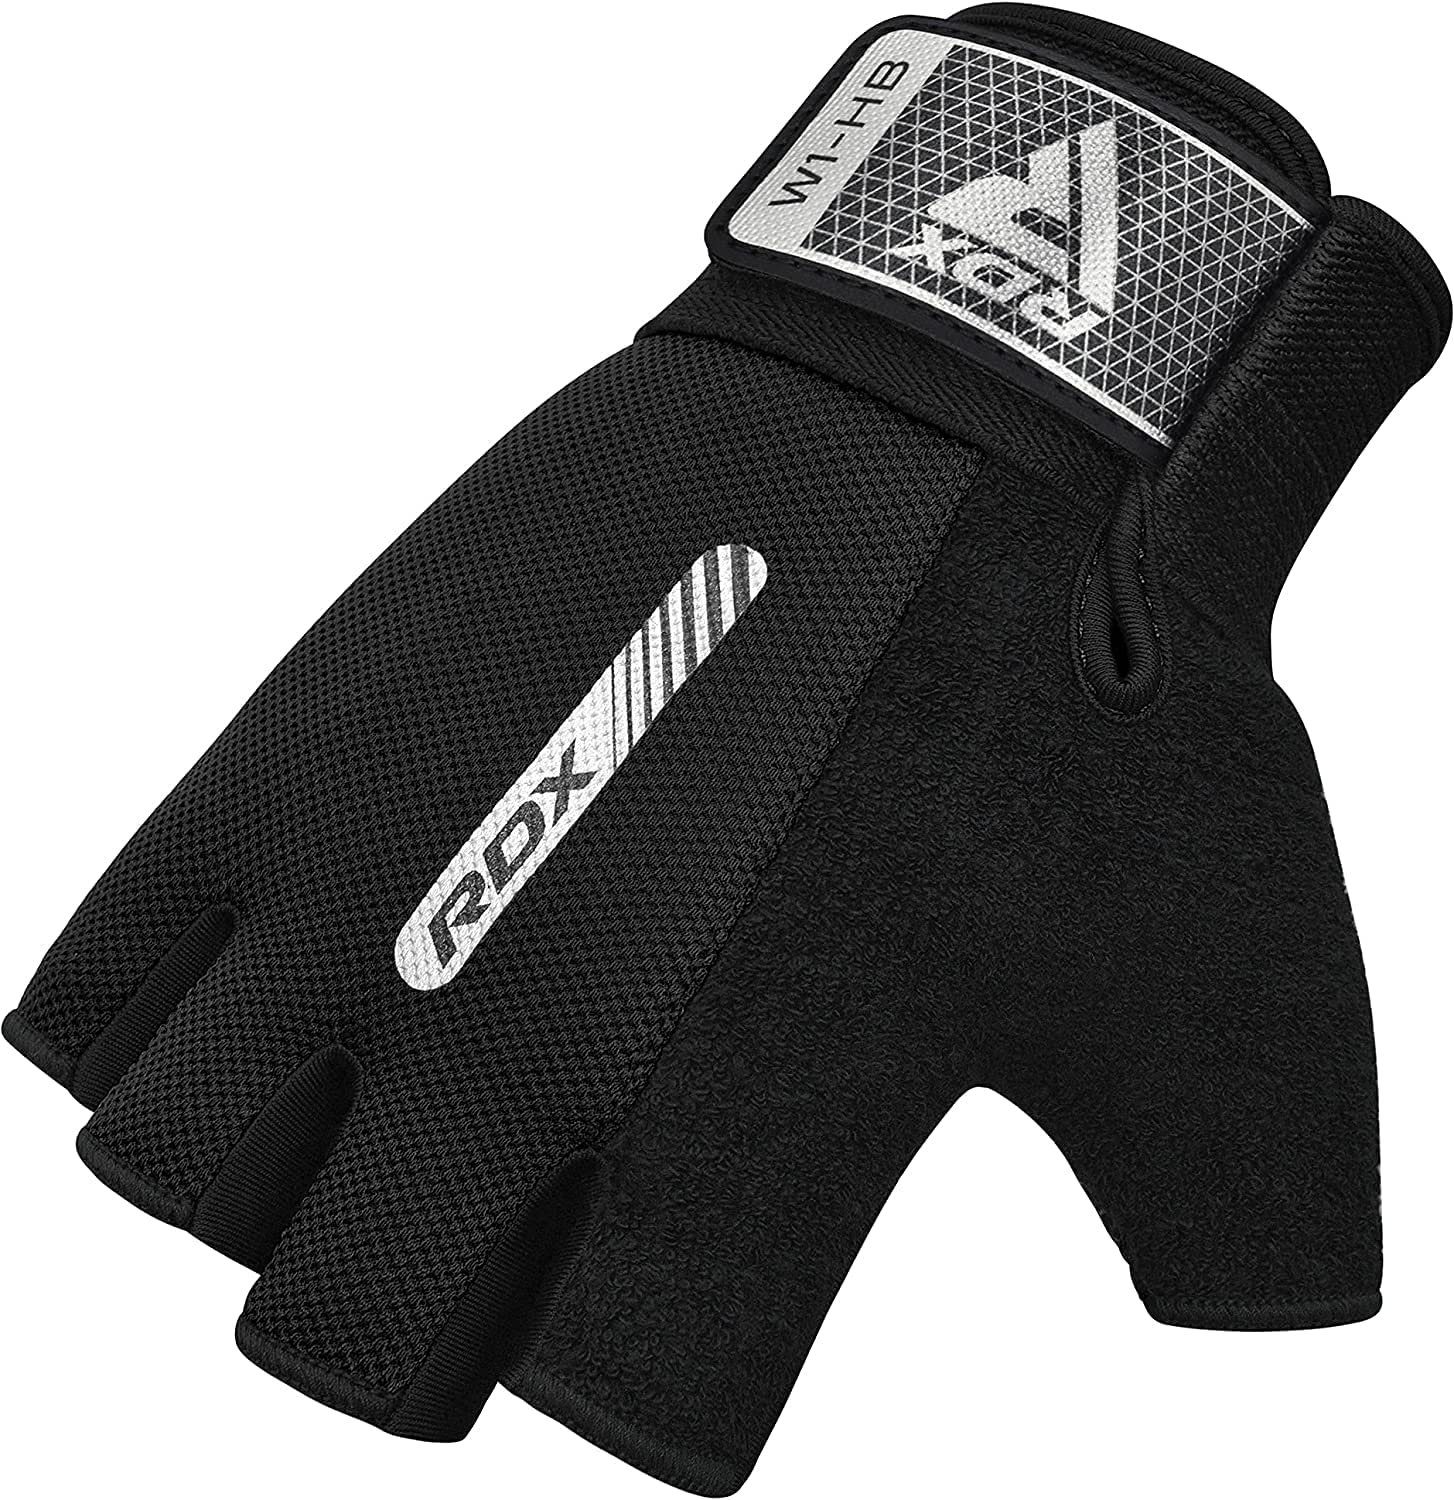 Frauen Männer RDX Fitness Anti-Rutsch Handschuhe RDX Trainingshandschuhe BLACK Workout Handschuhe